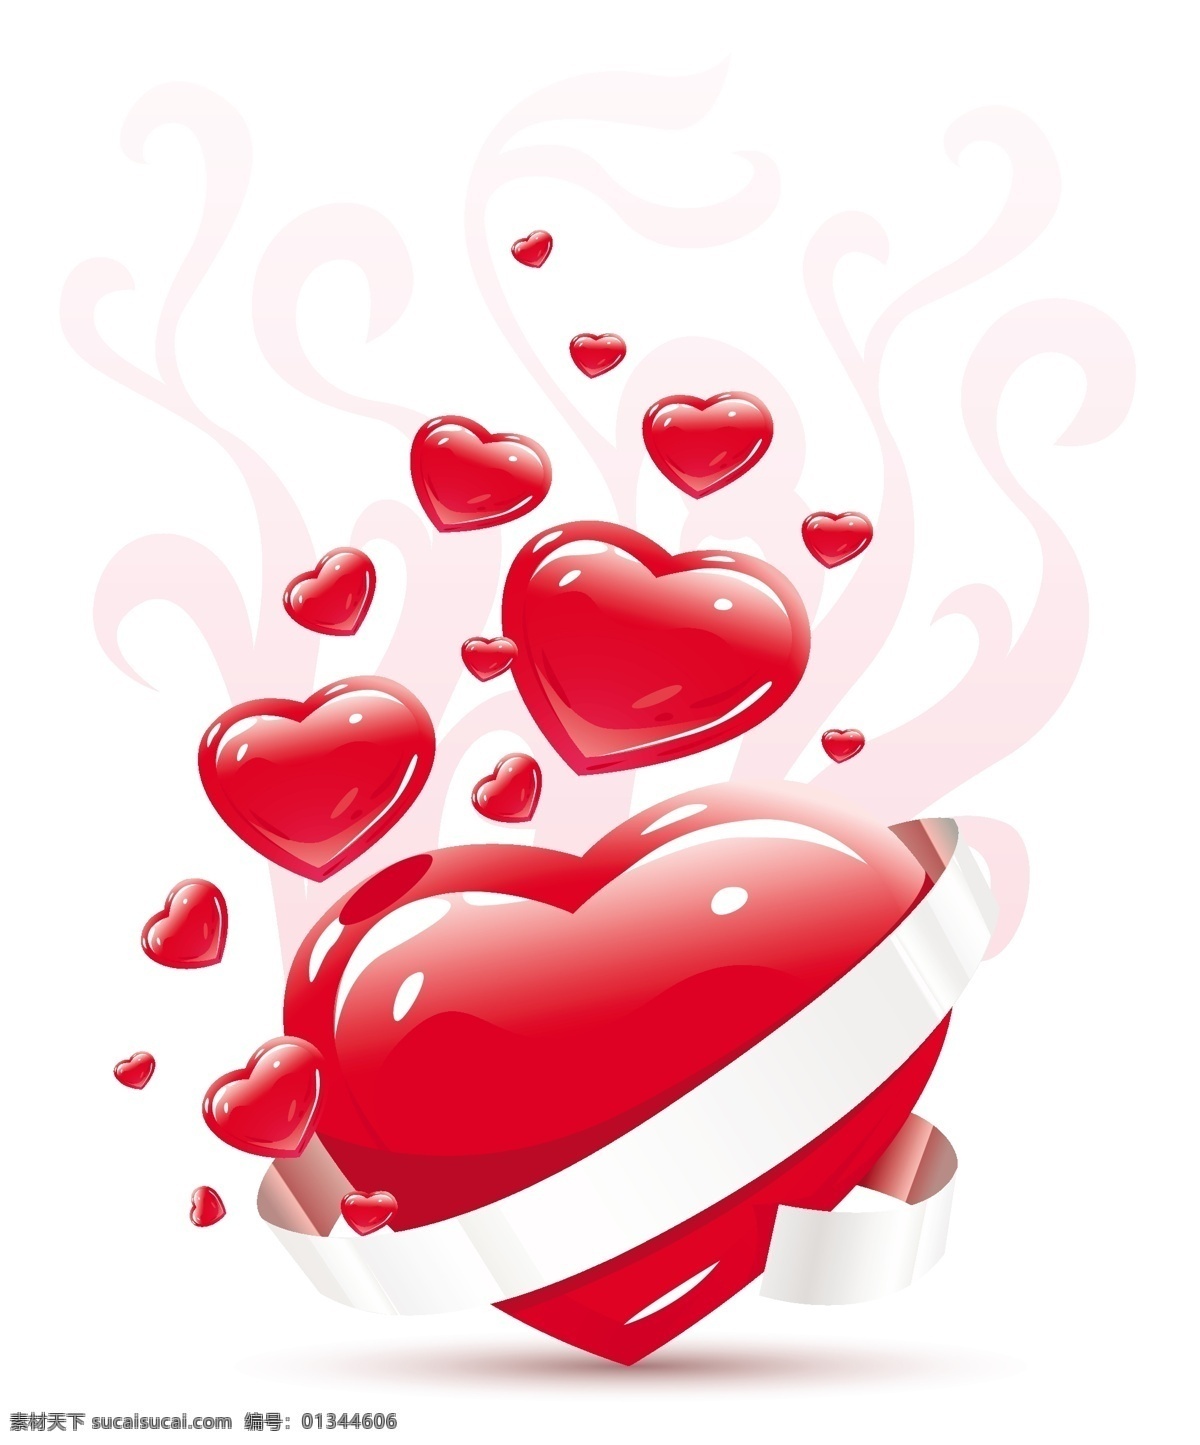 浪漫 爱心 主题 矢量 爱心设计 花纹 浪漫爱心 丝带 立体红心 矢量图 其他矢量图